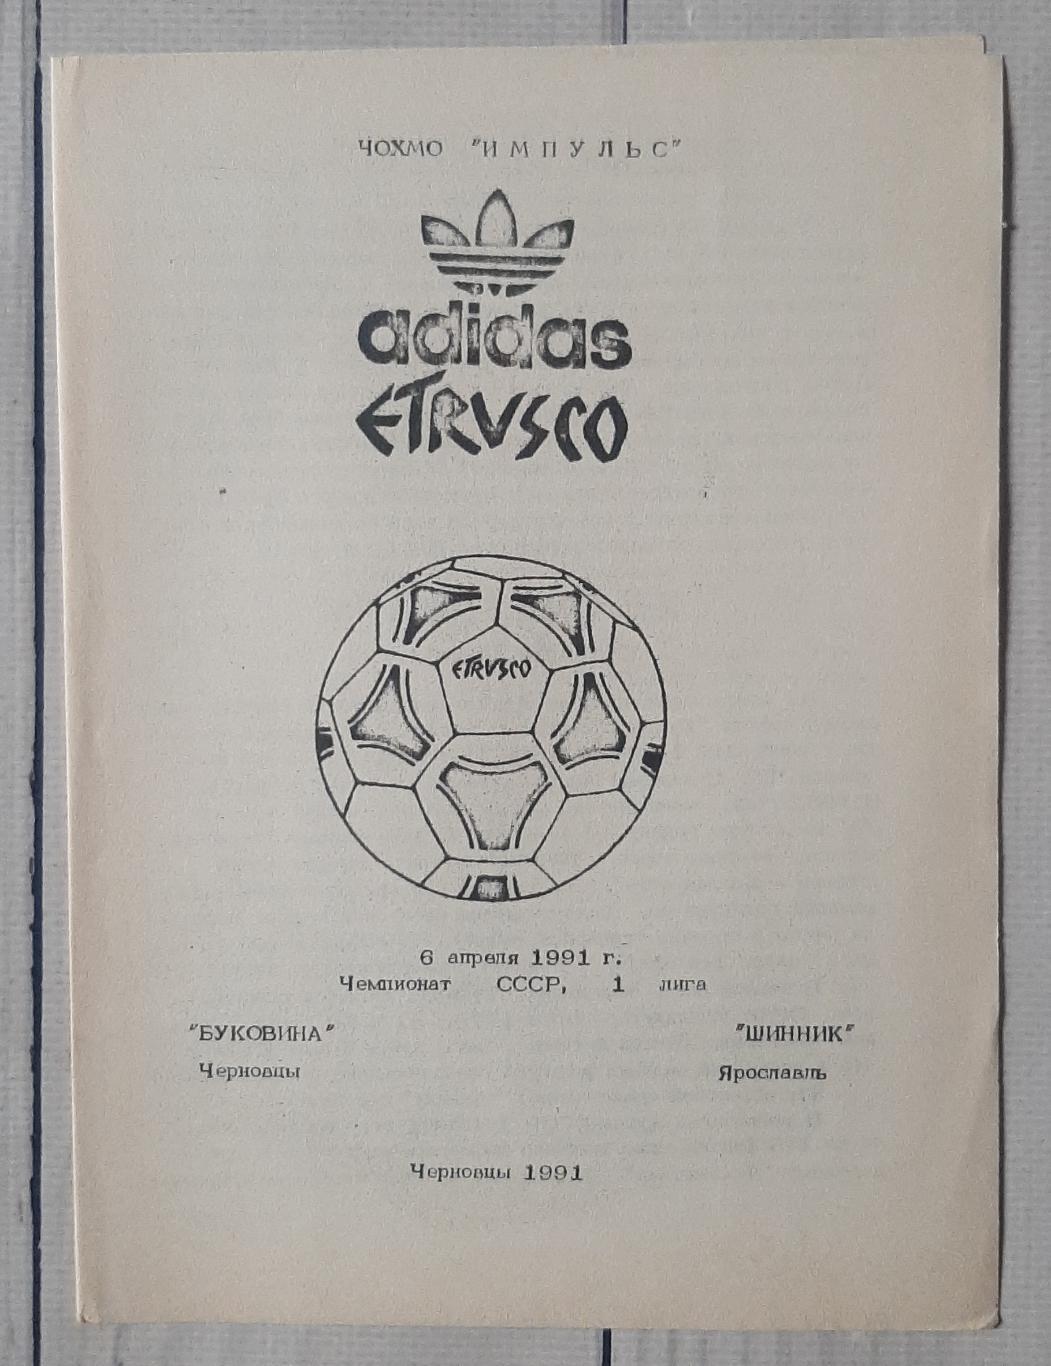 Буковина Чернівці - Шиннік Ярославль 06.04.1991